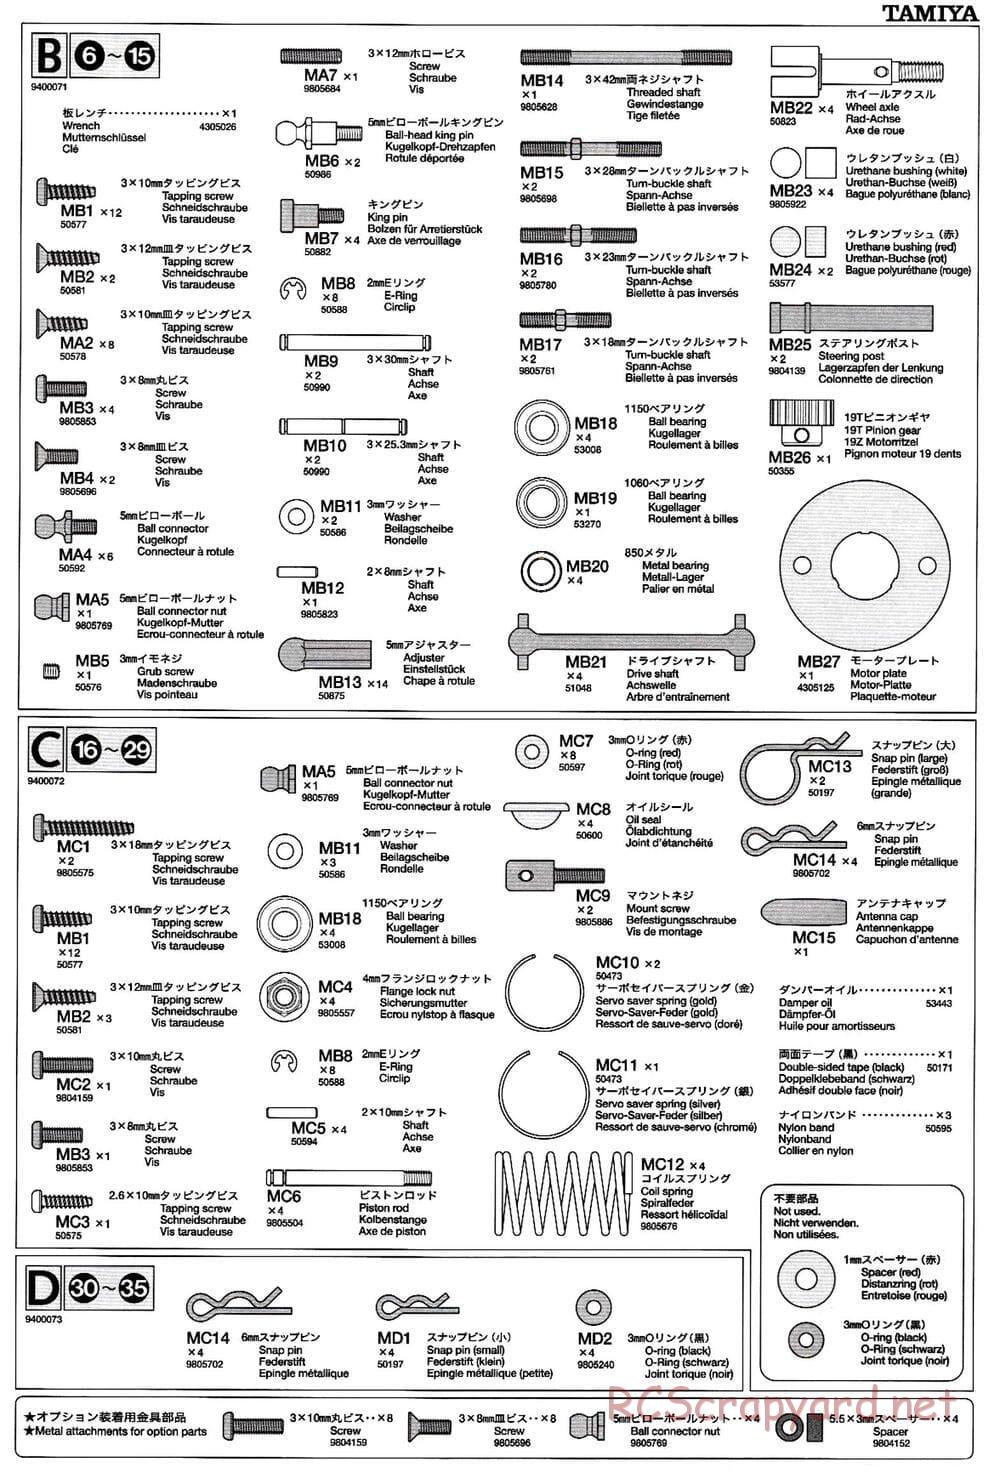 Tamiya - TB-02 Chassis - Manual - Page 22